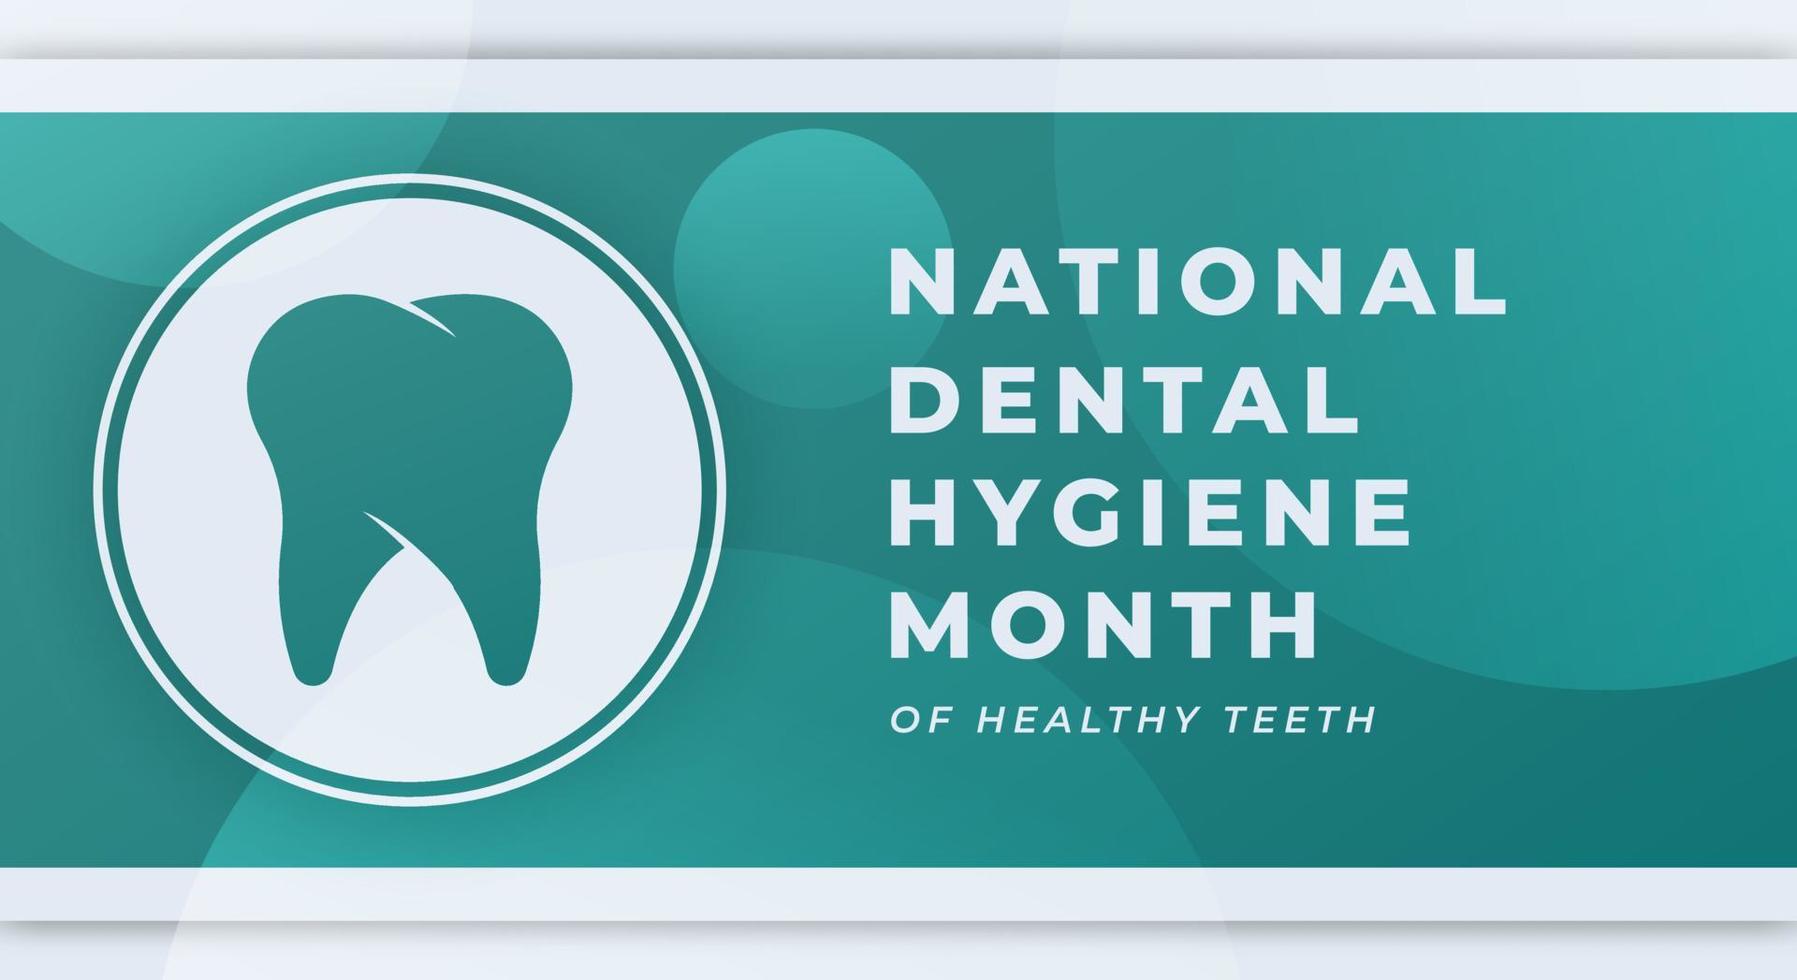 Happy National Dental Hygiene Month Celebration Vector Design Illustration for Background, Poster, Banner, Advertising, Greeting Card